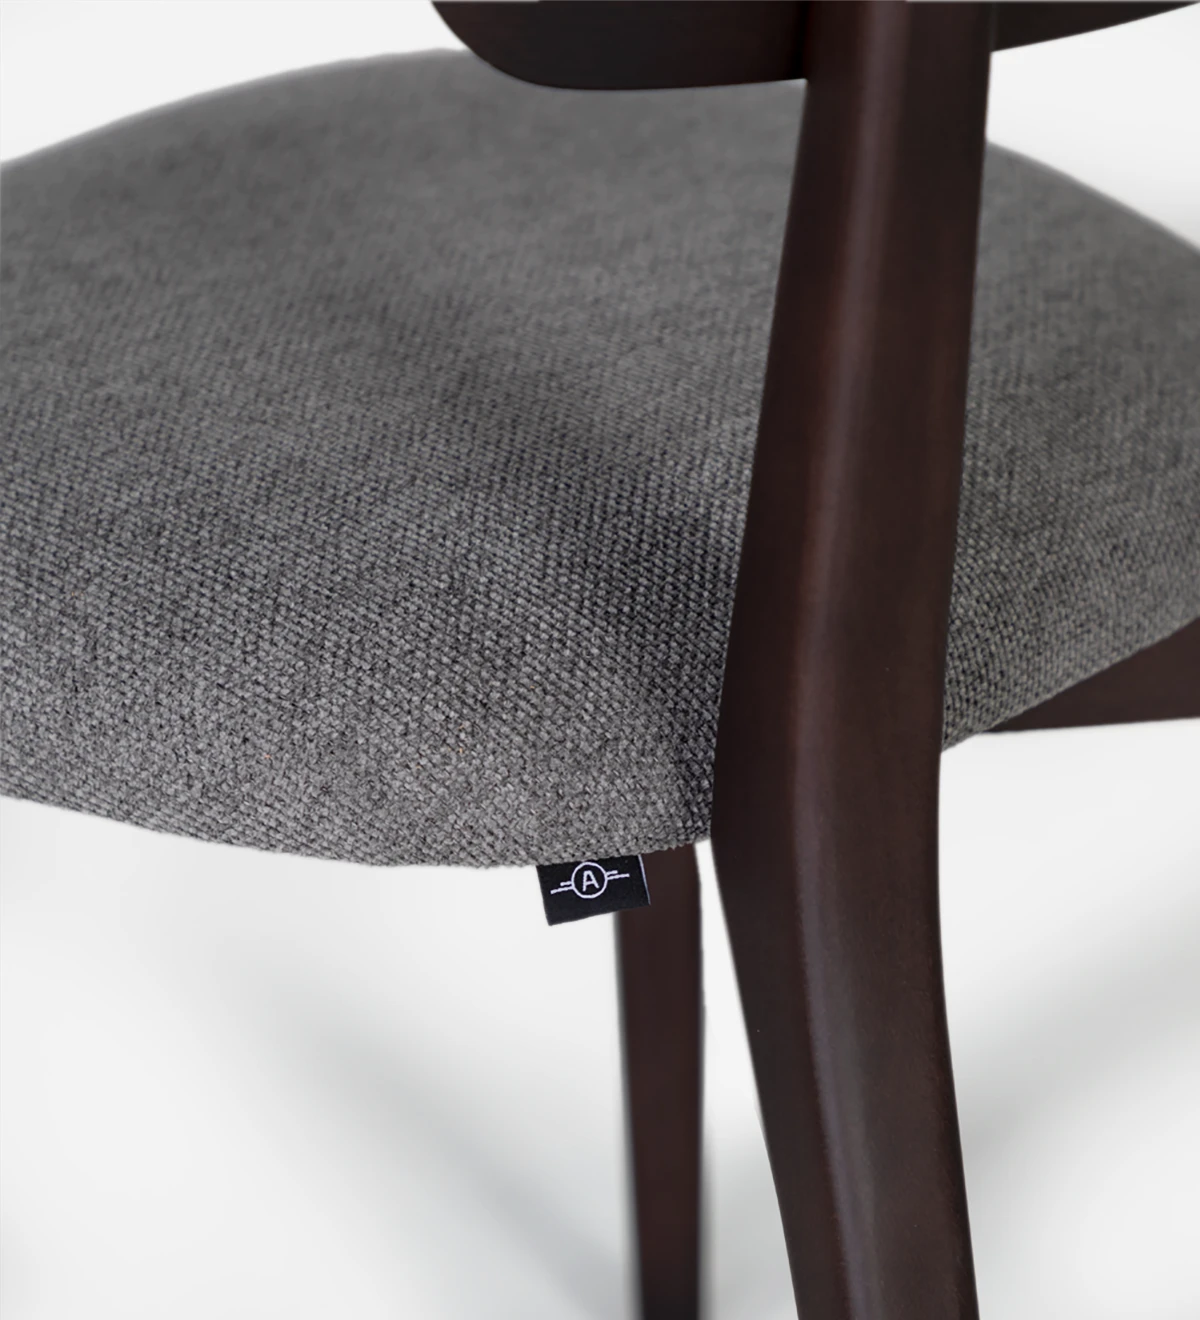 Cadeira de madeira, com pormenor de rattan nas costas e assento estofado a tecido